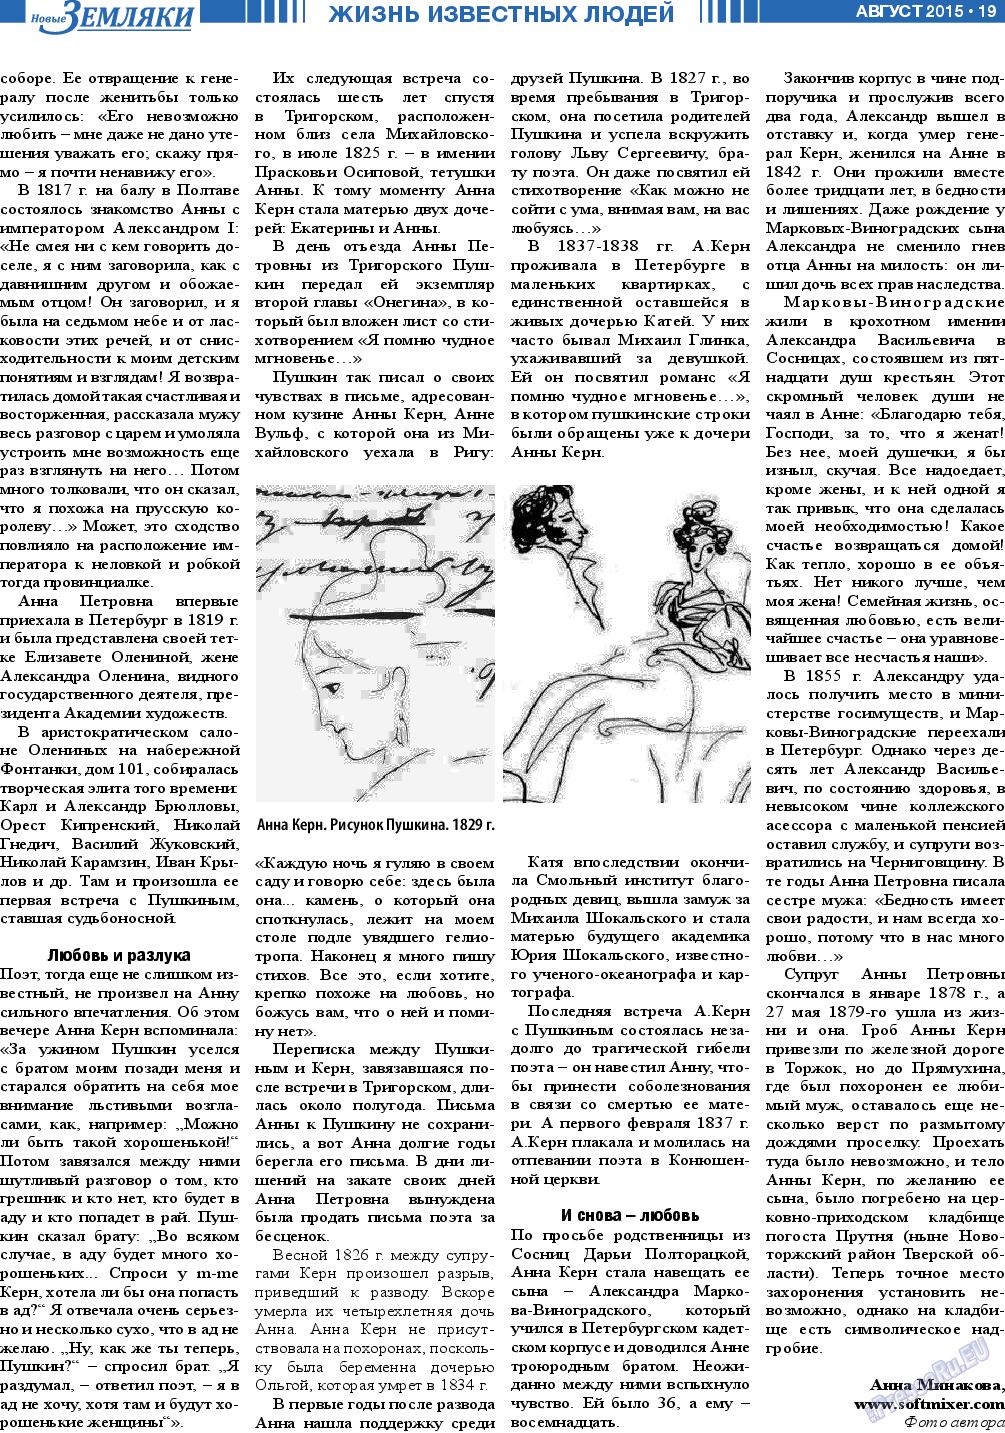 Новые Земляки, газета. 2015 №8 стр.19